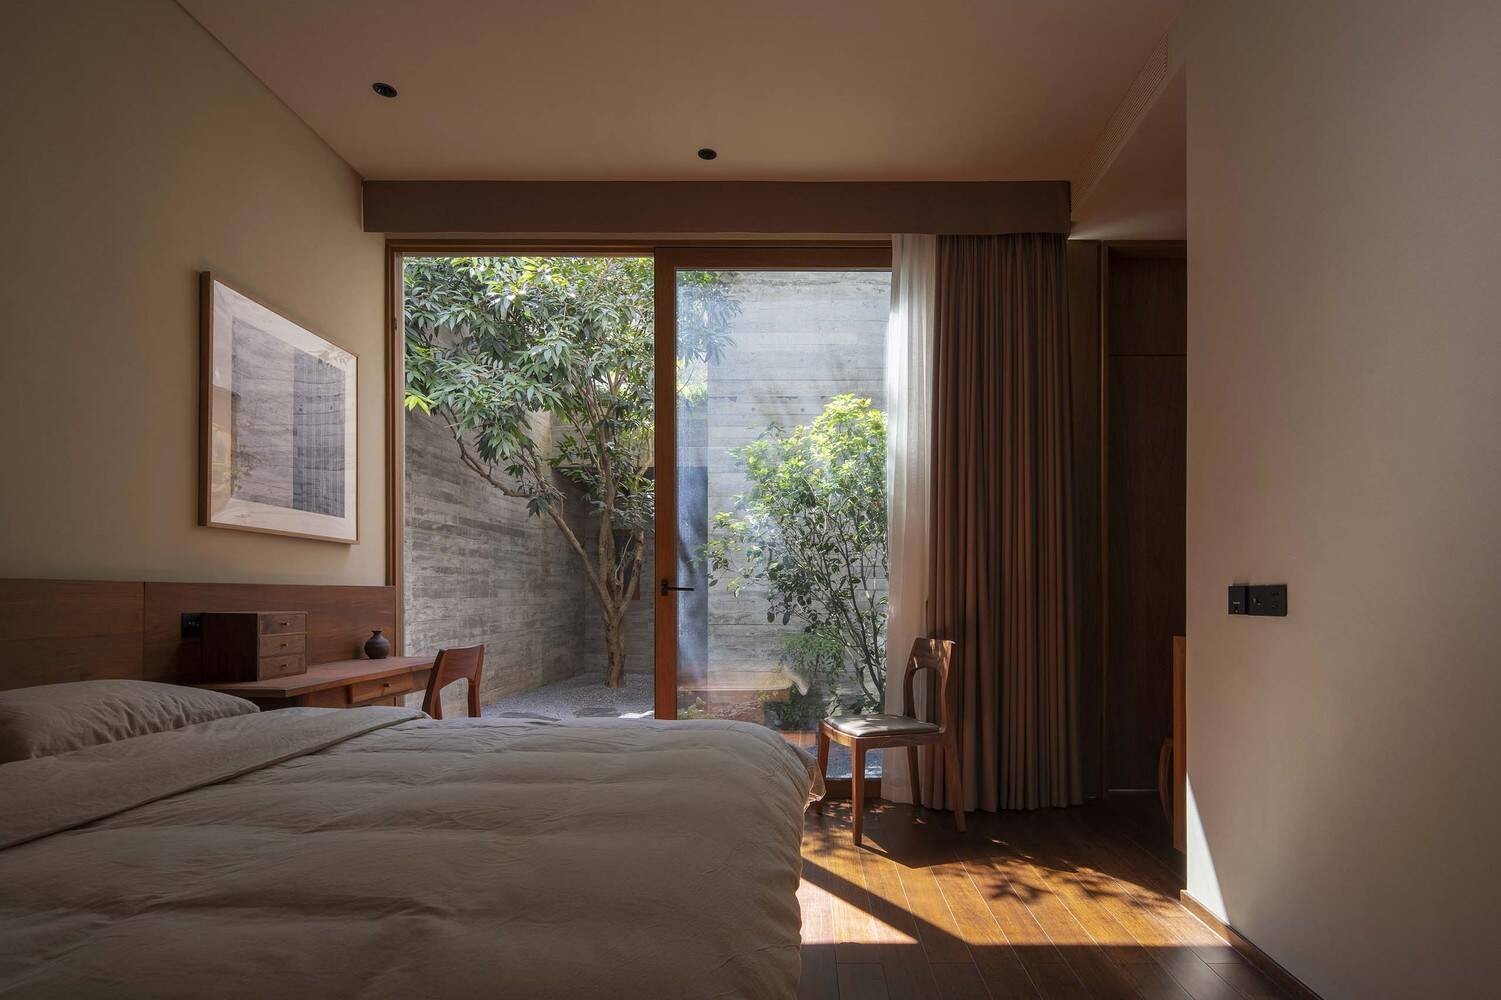 
Phòng ngủ có tông màu trung tính mang đến cho gia chủ cảm giác yên bình, thư thái khi ngủ
